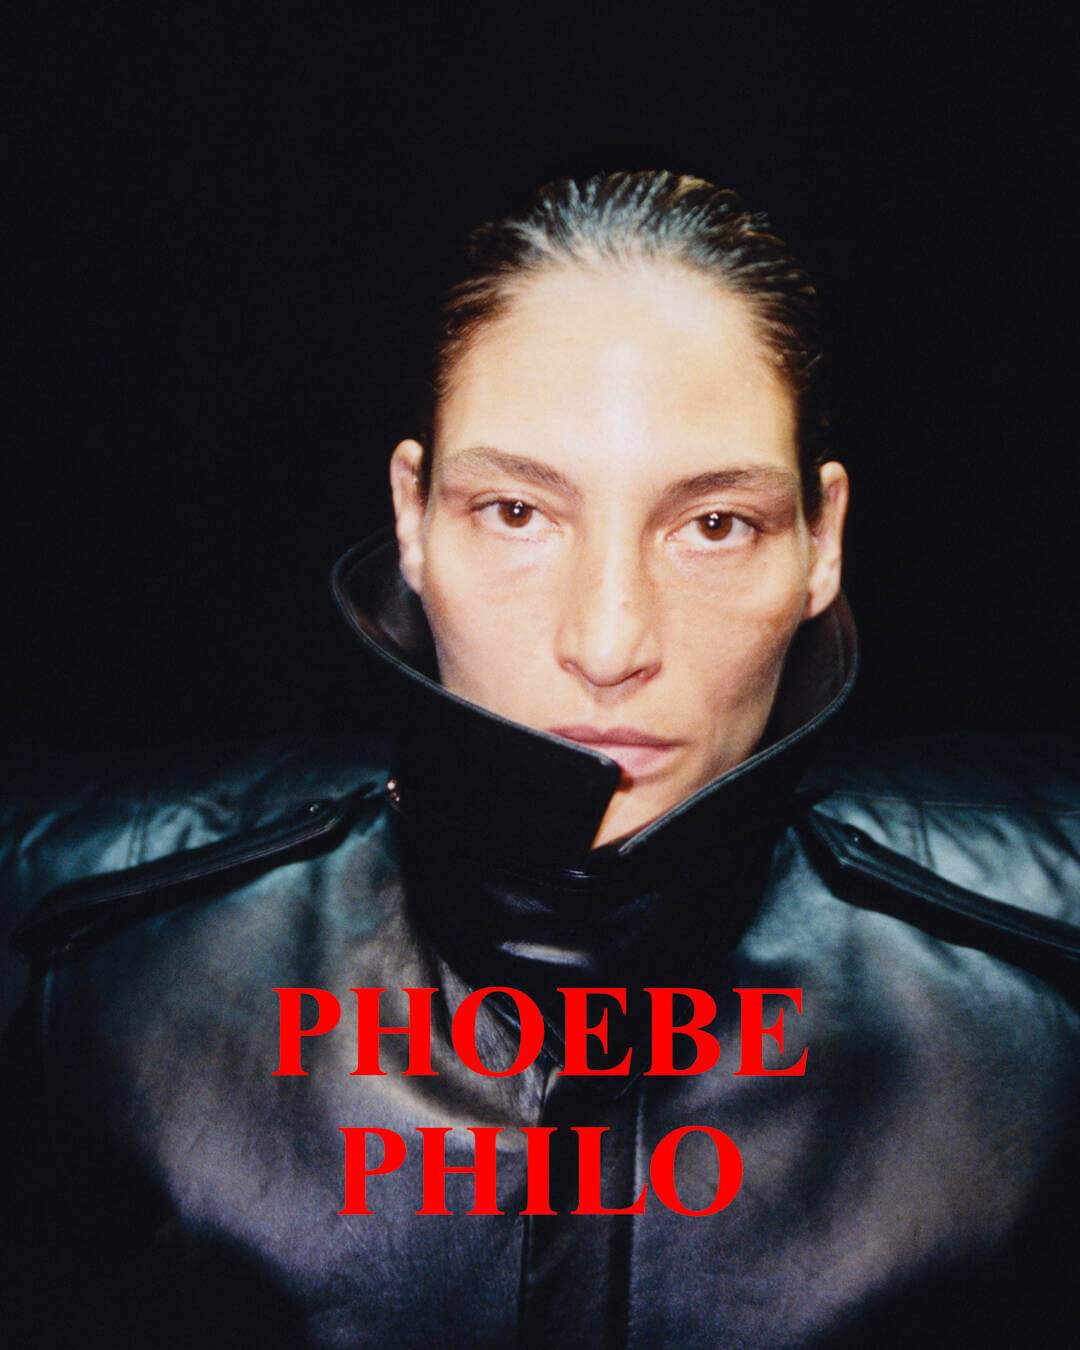 LA COOL & CHIC  Phoebe philo, Philo, Normcore fashion